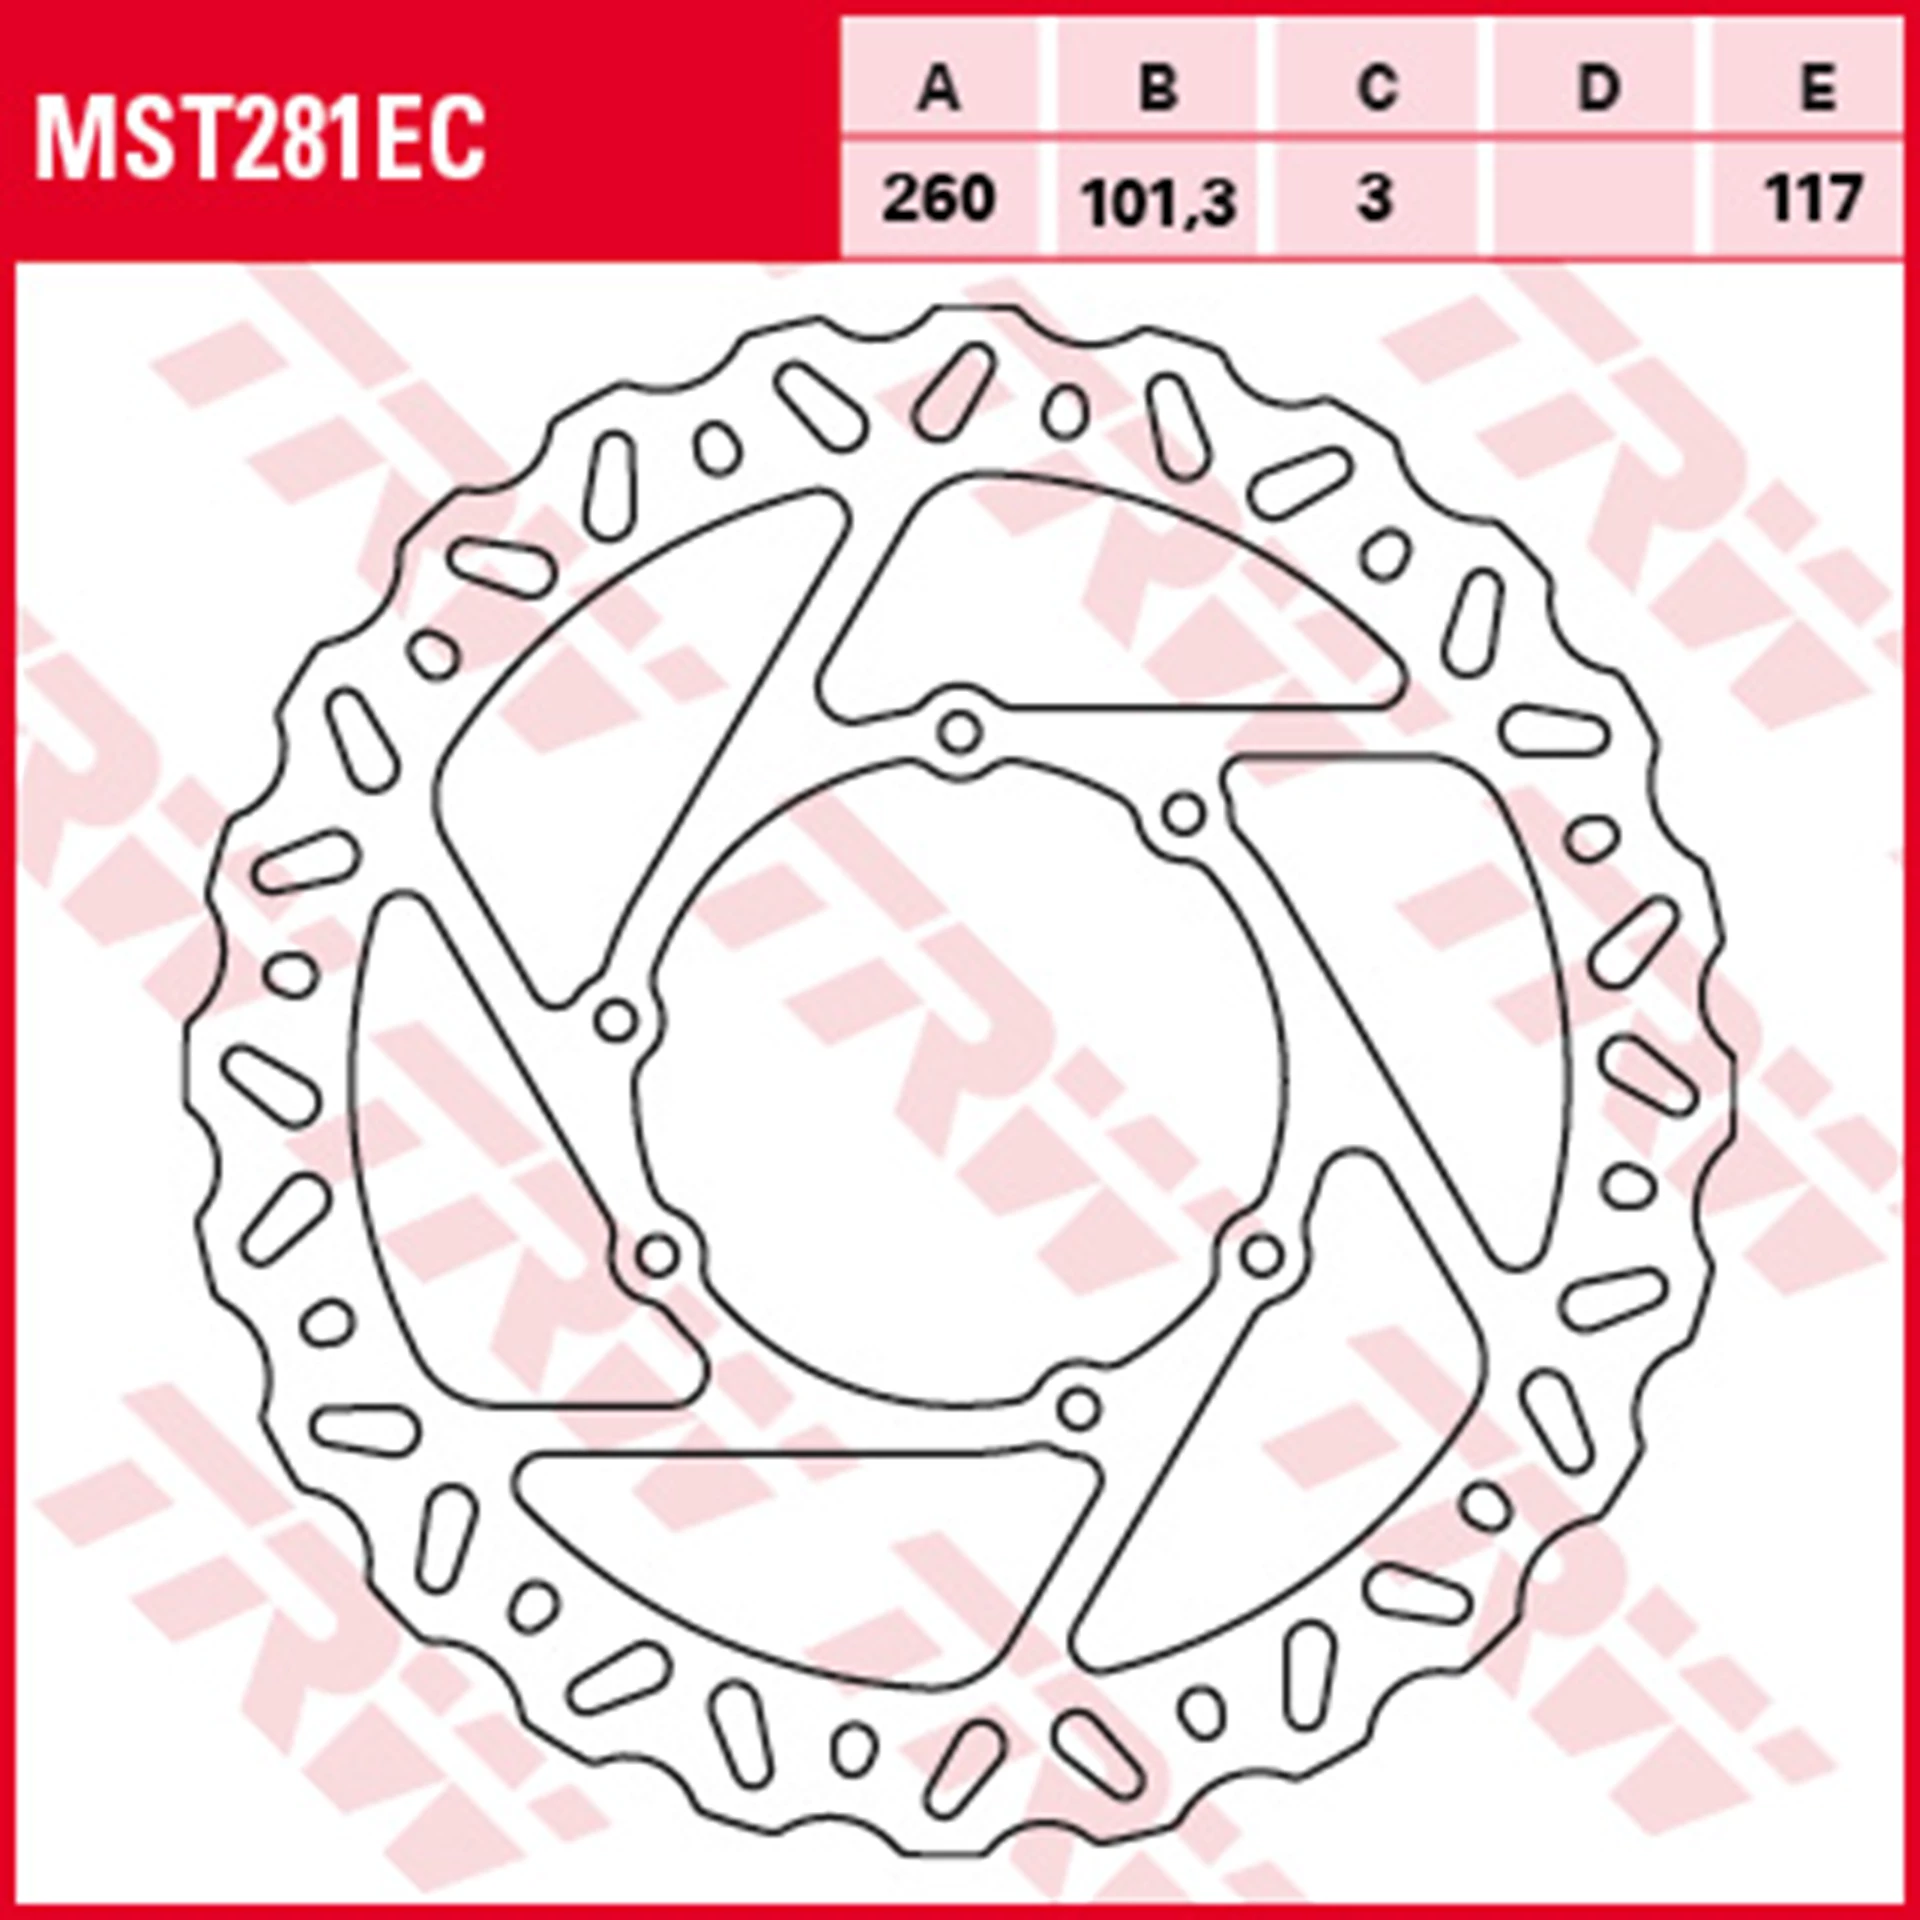 MST281EC.jpg